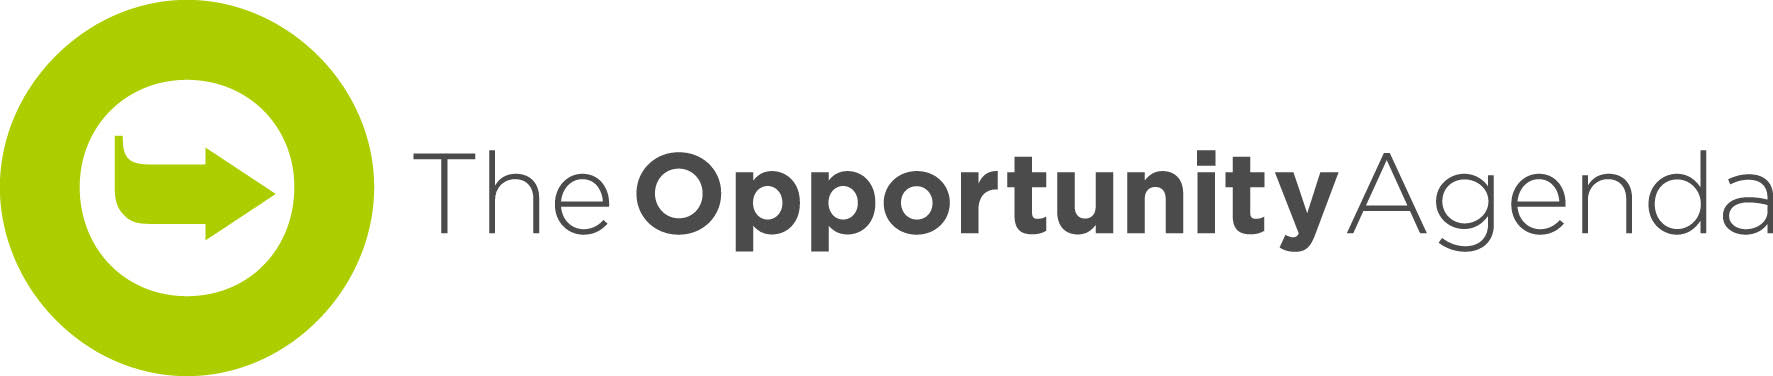 Opp Agenda_logo.jpg